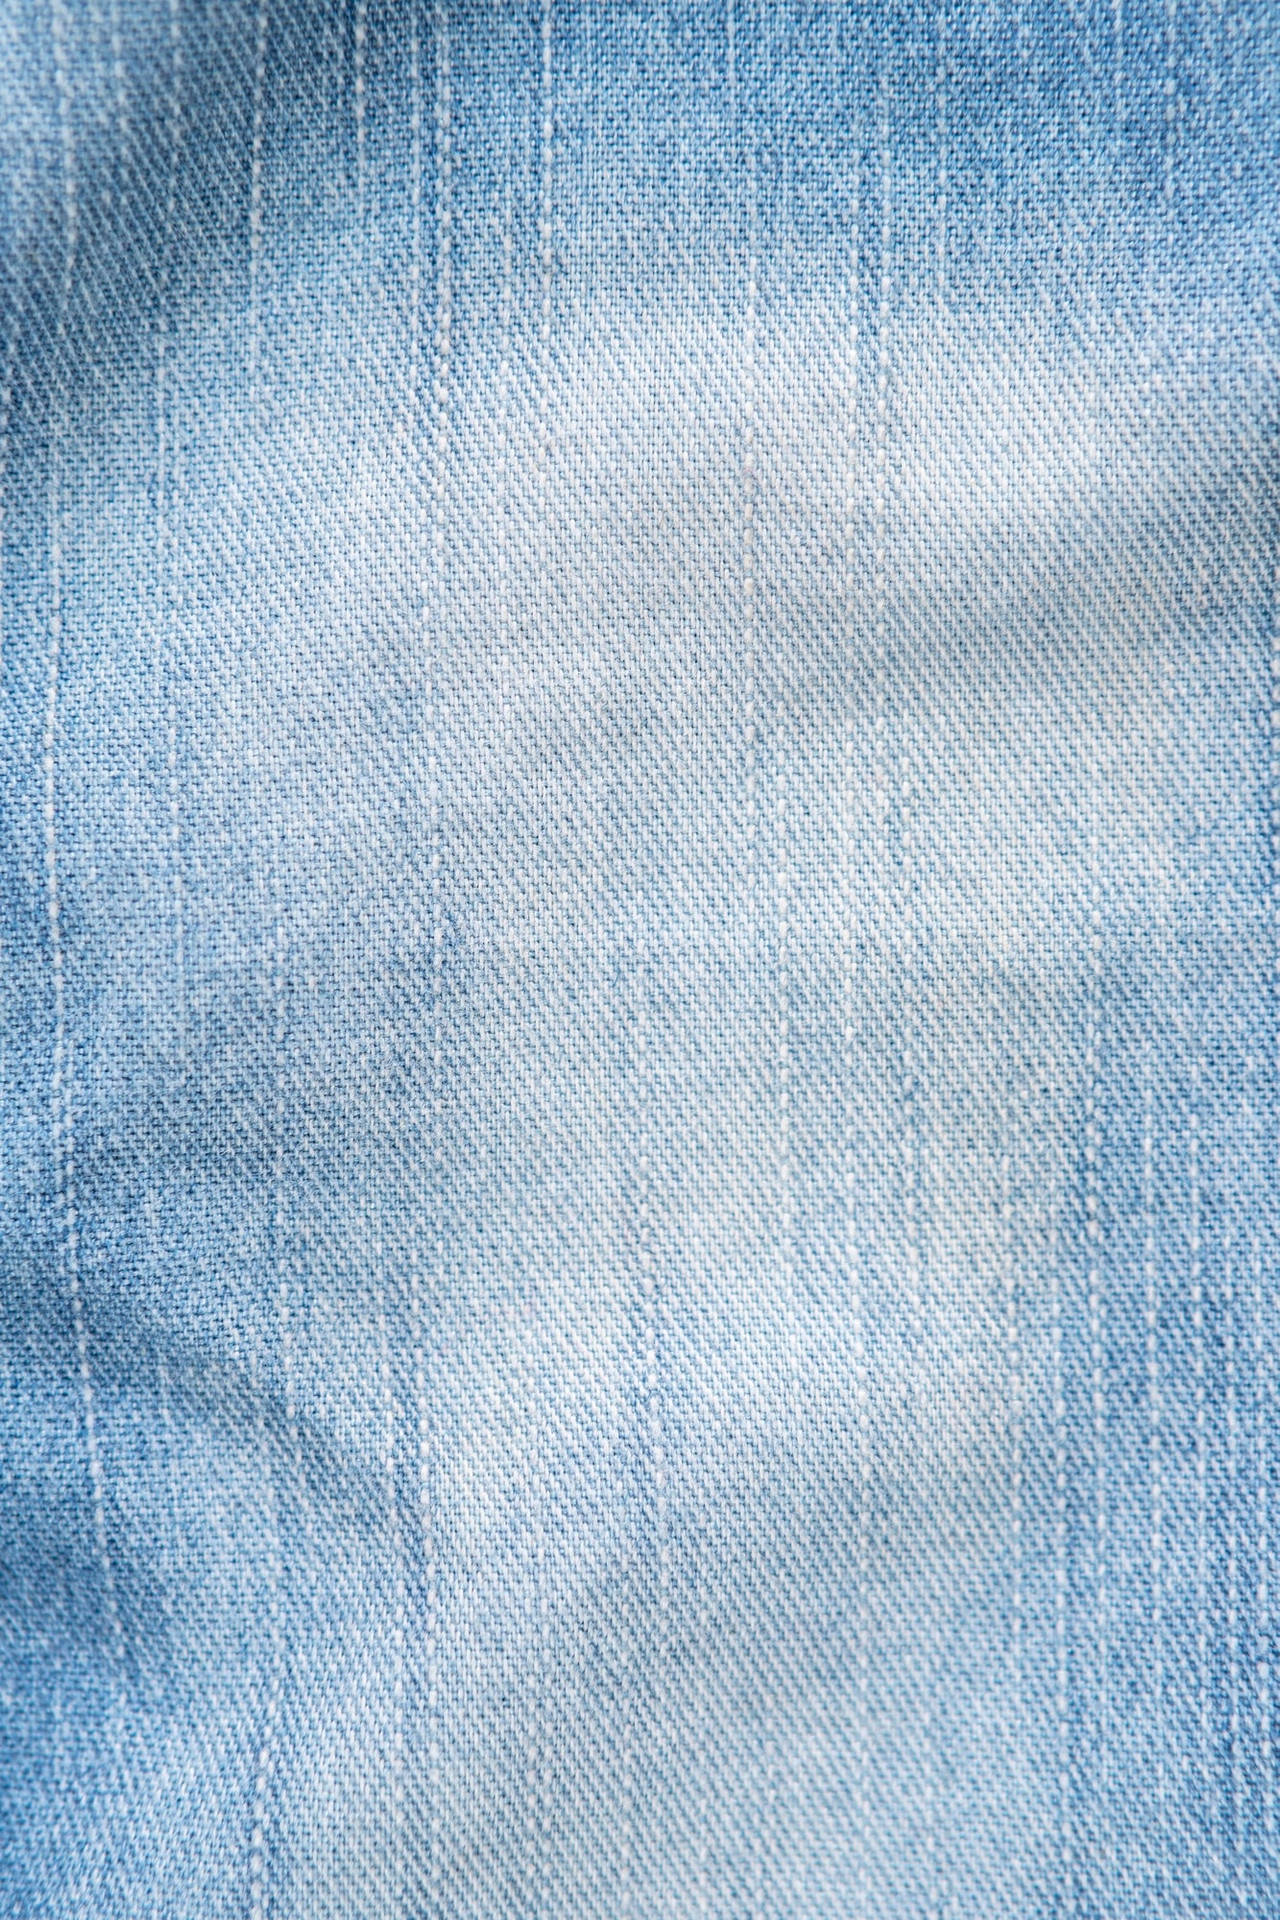 Bleach Blue Denim Jeans Wallpaper